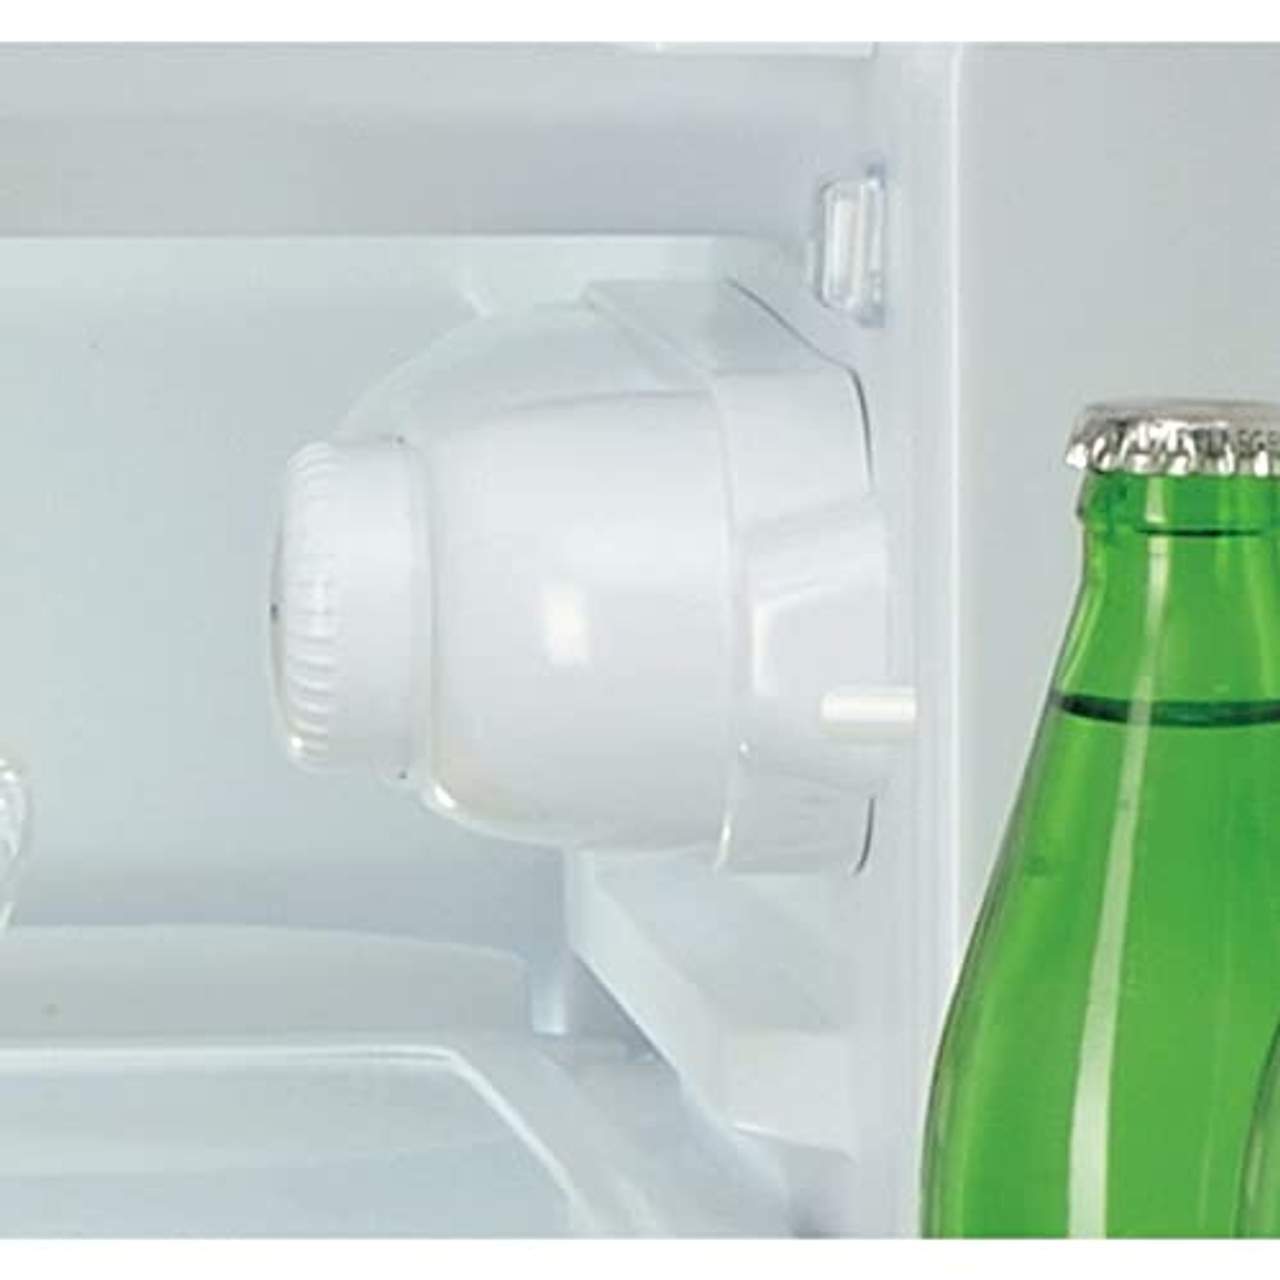 Bauknecht KSI 9GF2 Einbau-Kühlschrank mit Gefrierfach